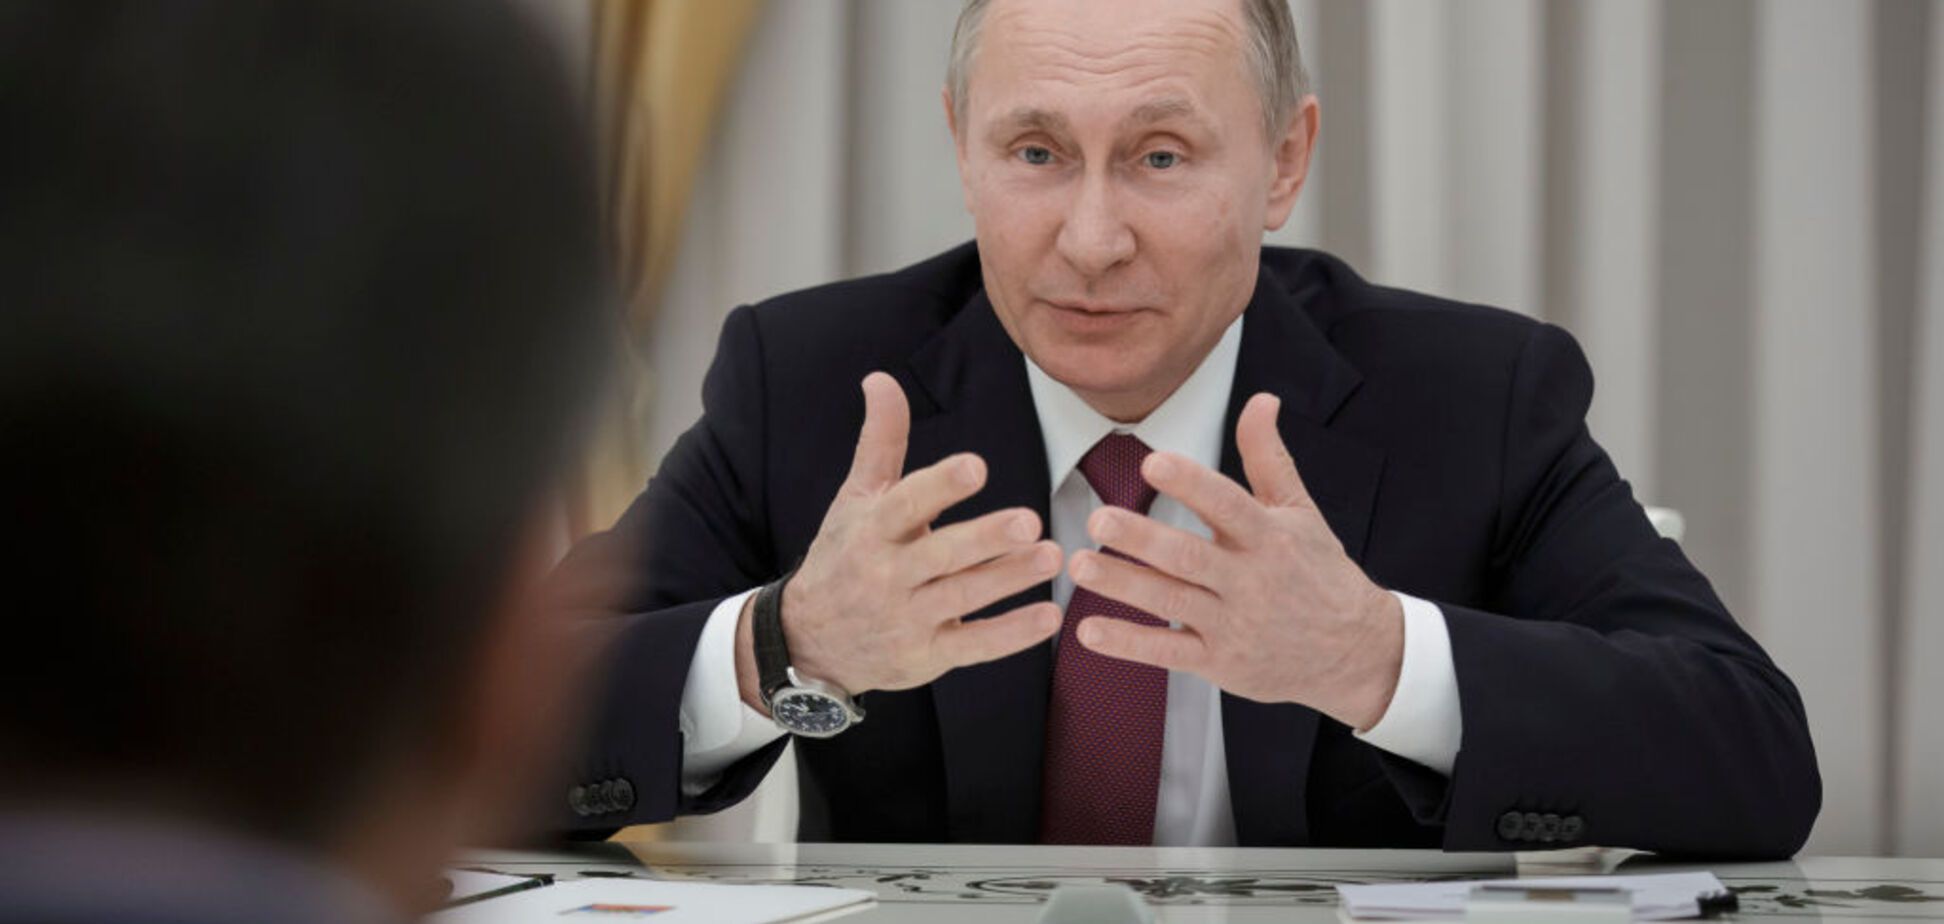 'Хуже некуда': друг Путина внезапно заявил о 'катастрофе' в отношениях с Россией